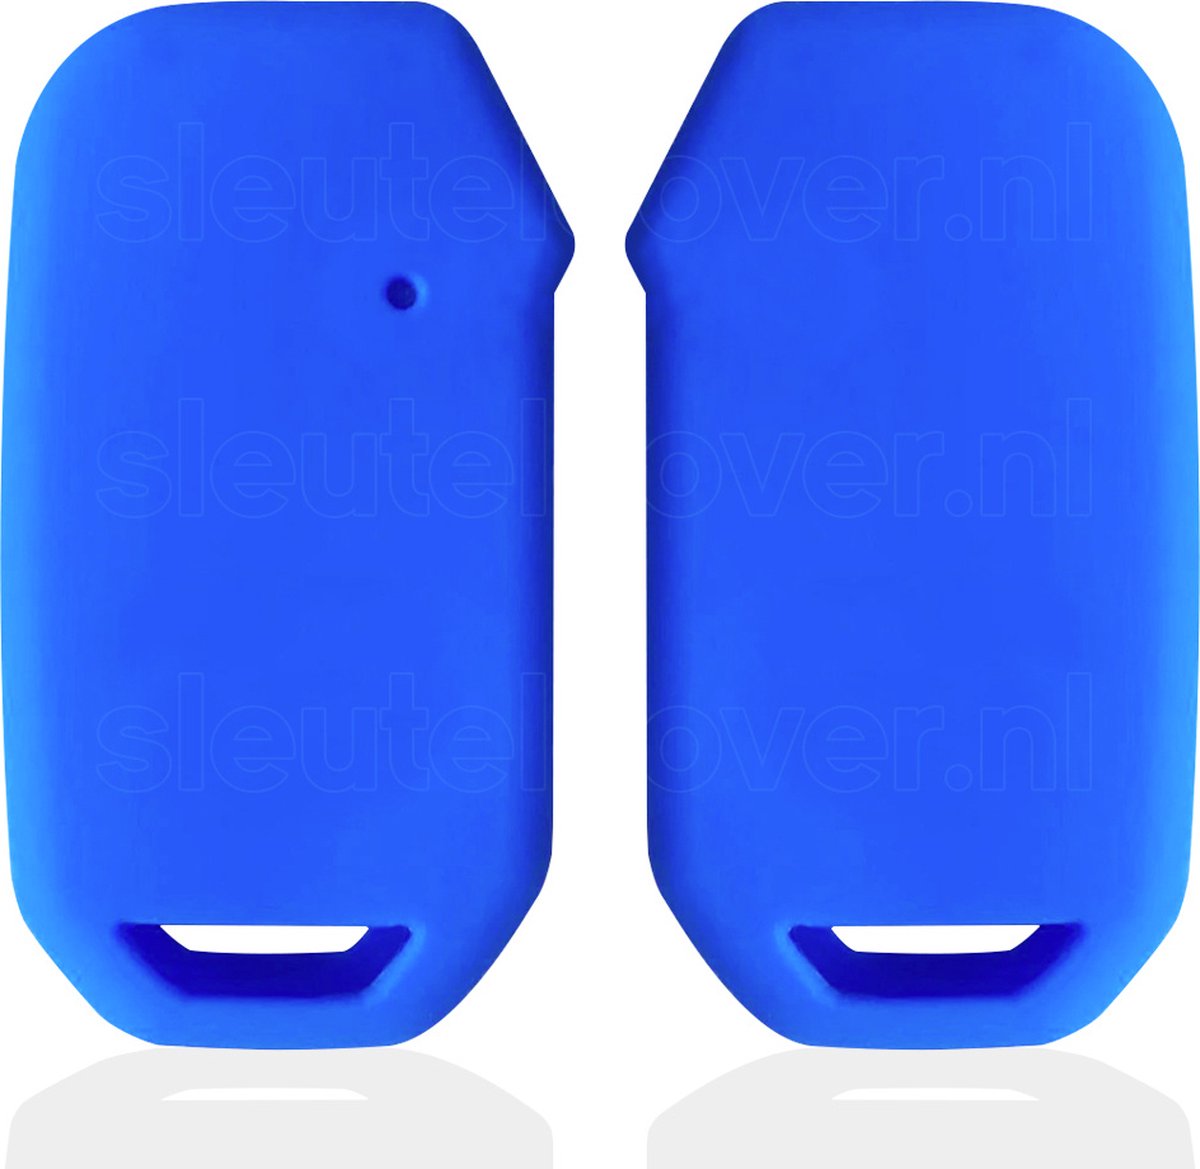 Autosleutel Hoesje geschikt voor Kia - SleutelCover - Silicone Autosleutel Cover - Sleutelhoesje Blauw